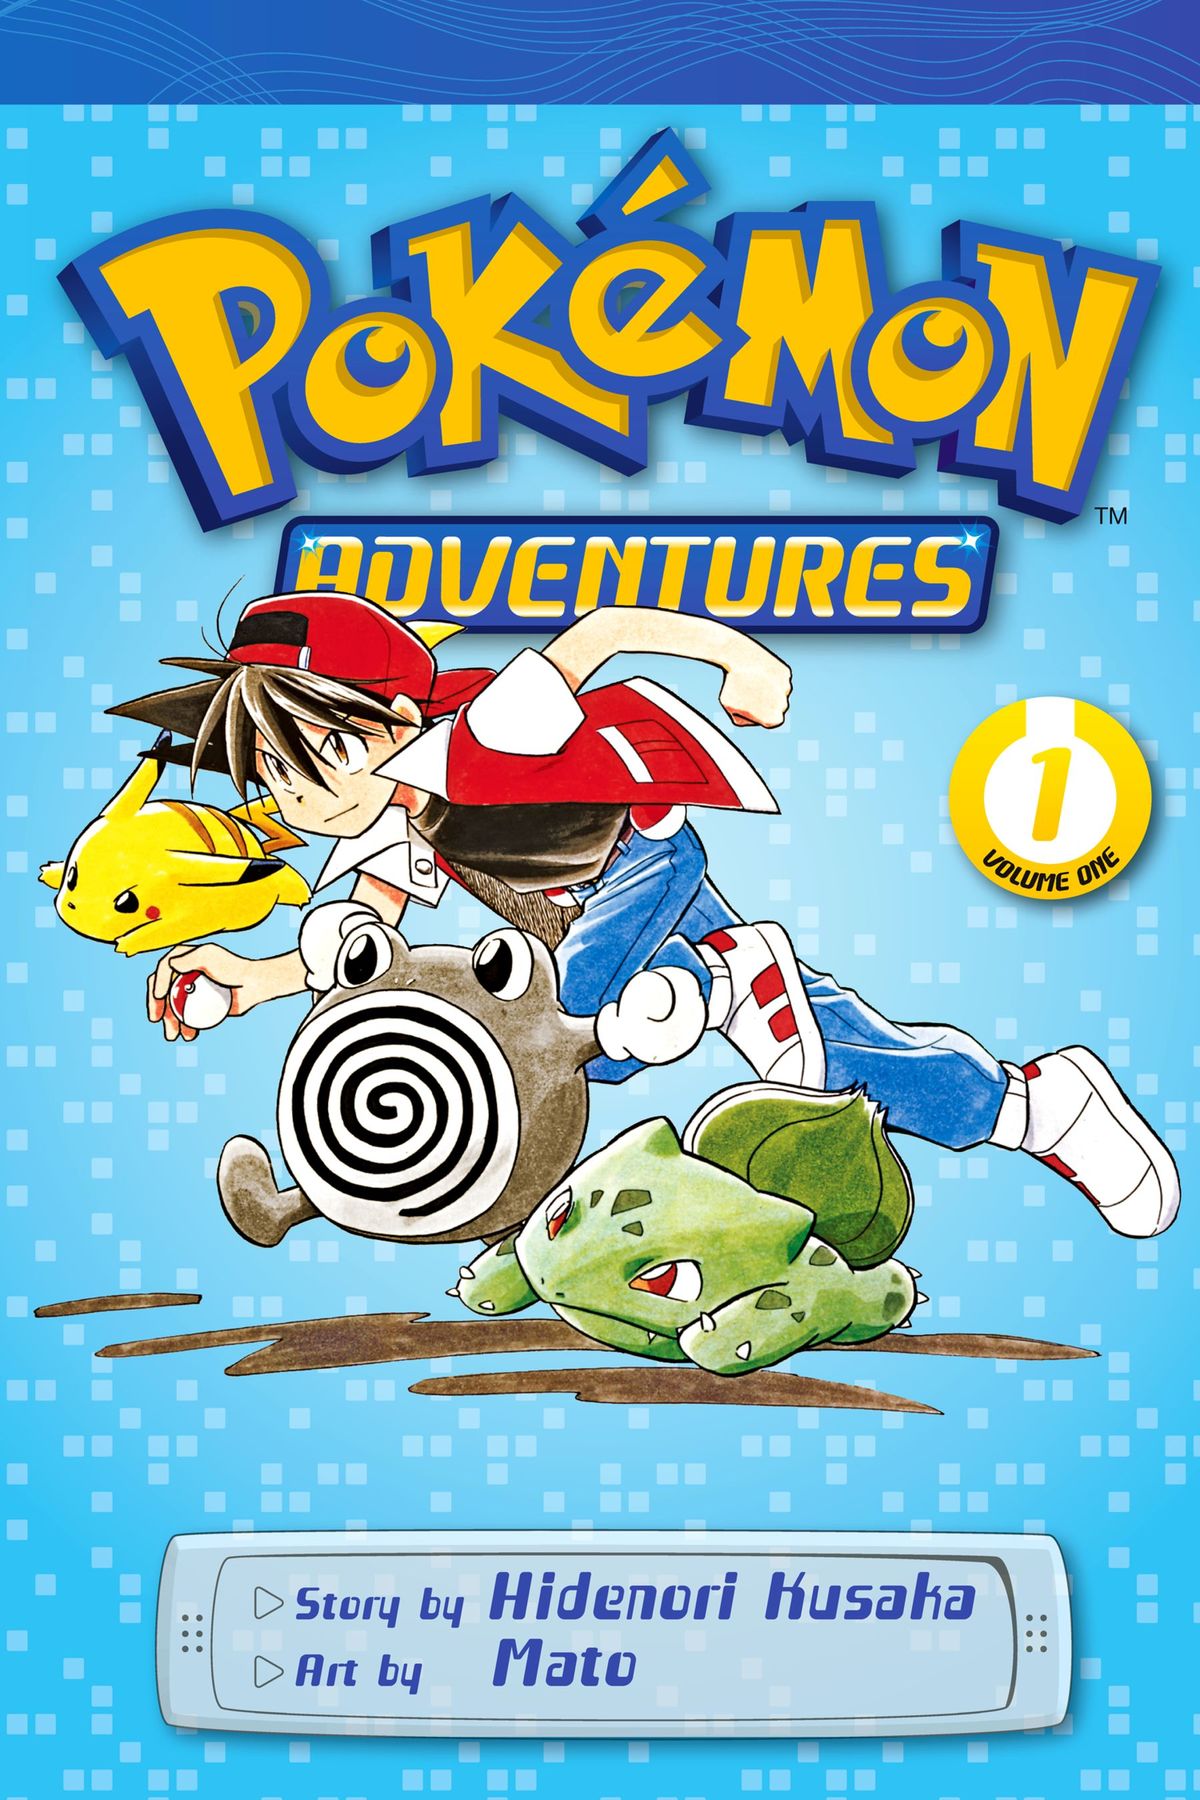 Pokémon Adventures - Bulbapedia, the community-driven Pokémon encyclopedia